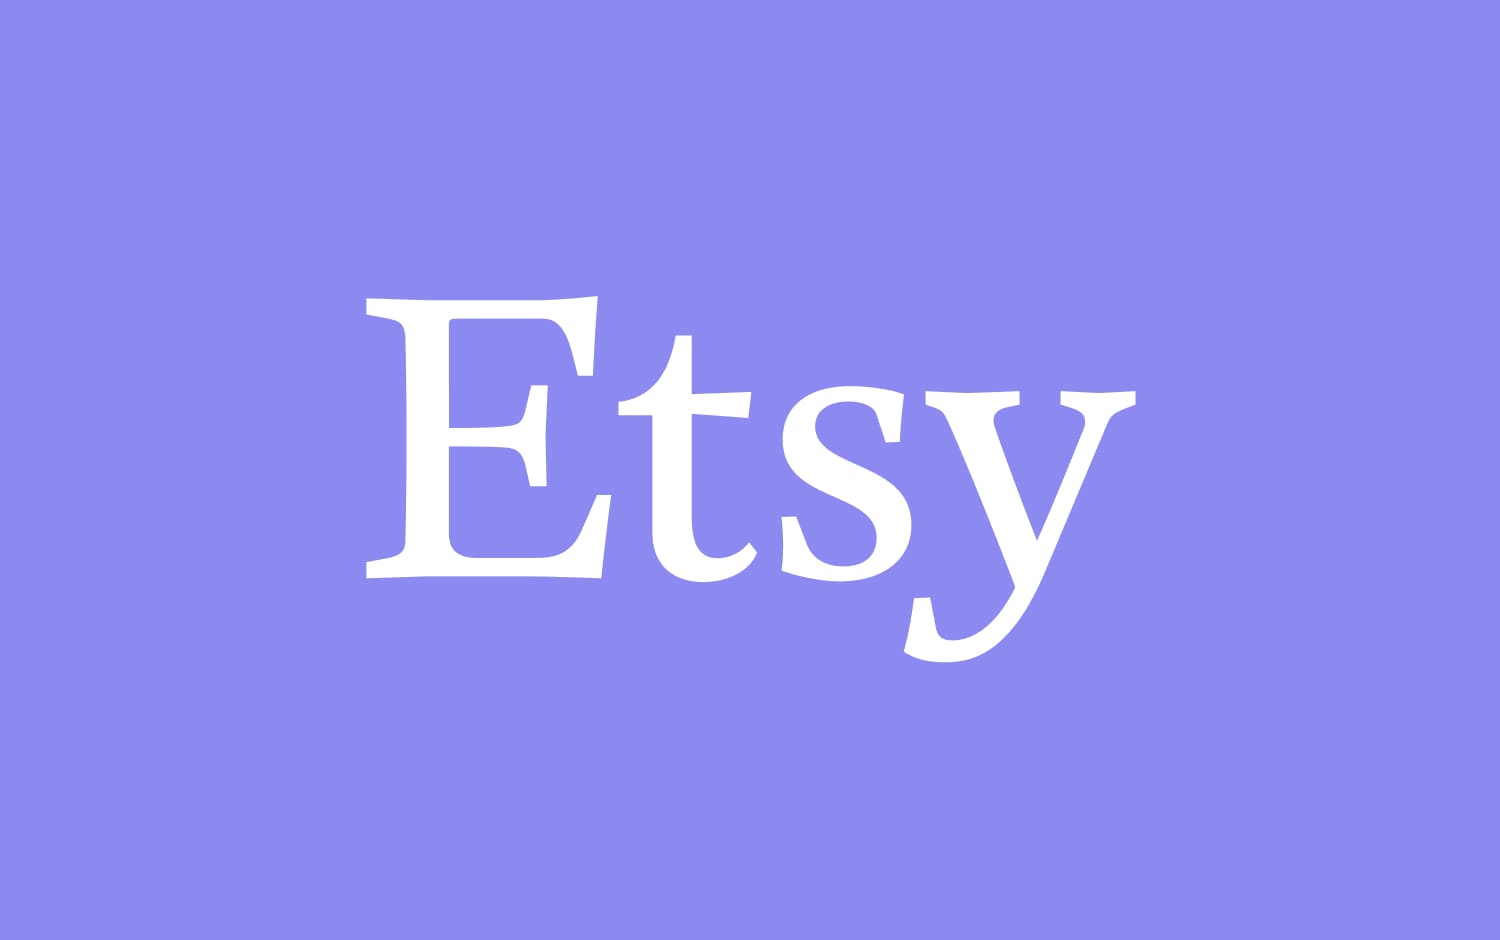 Etsy-Logo mit weißer Schrift auf lavendelfarbenem Hintergrund